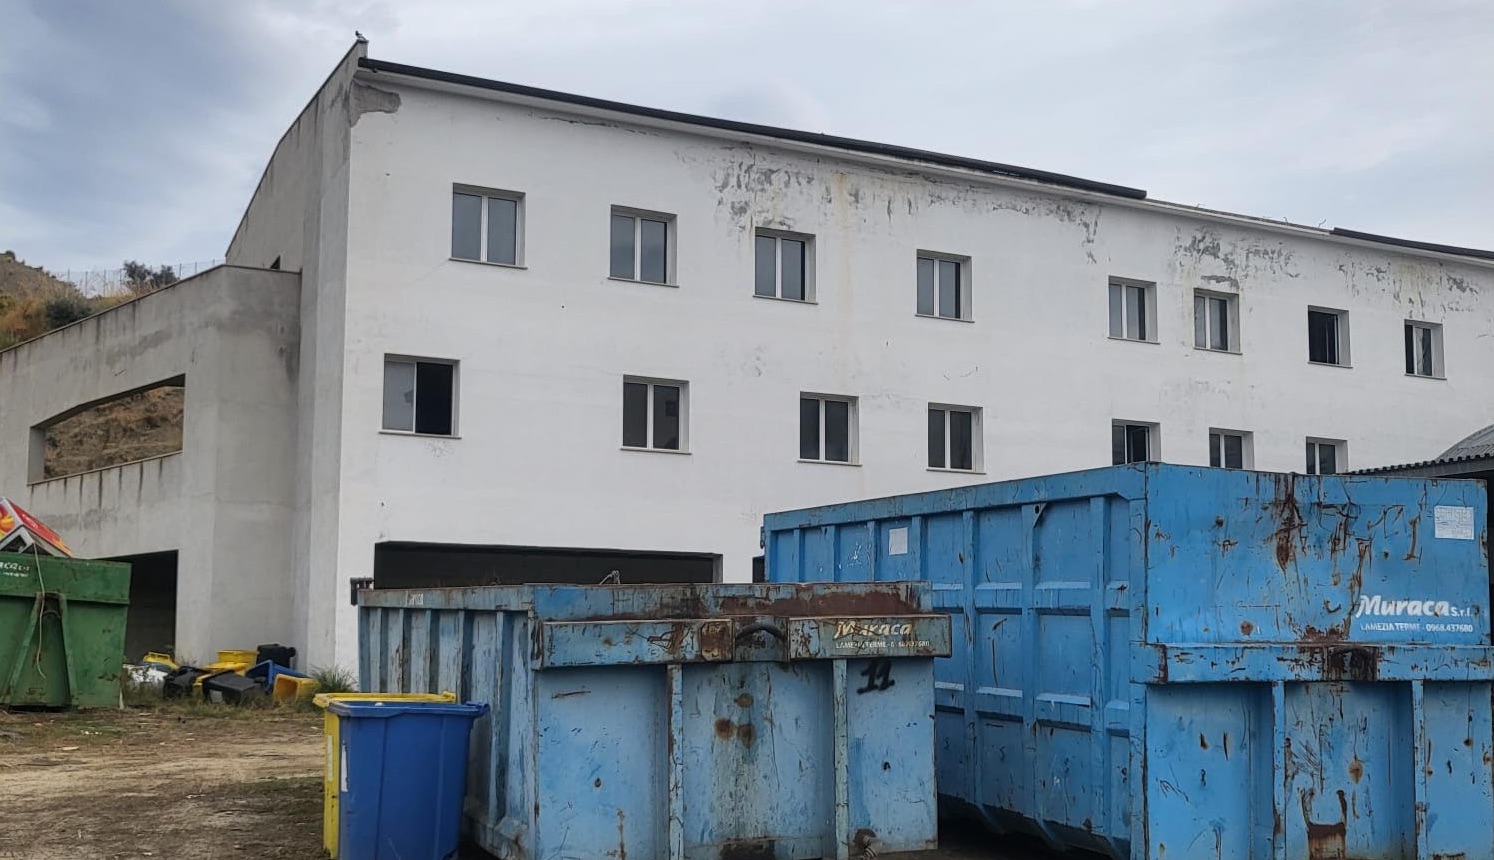 Bova Marina, la denuncia di Zirilli: «L’ospedale di comunità è diventato una discarica»